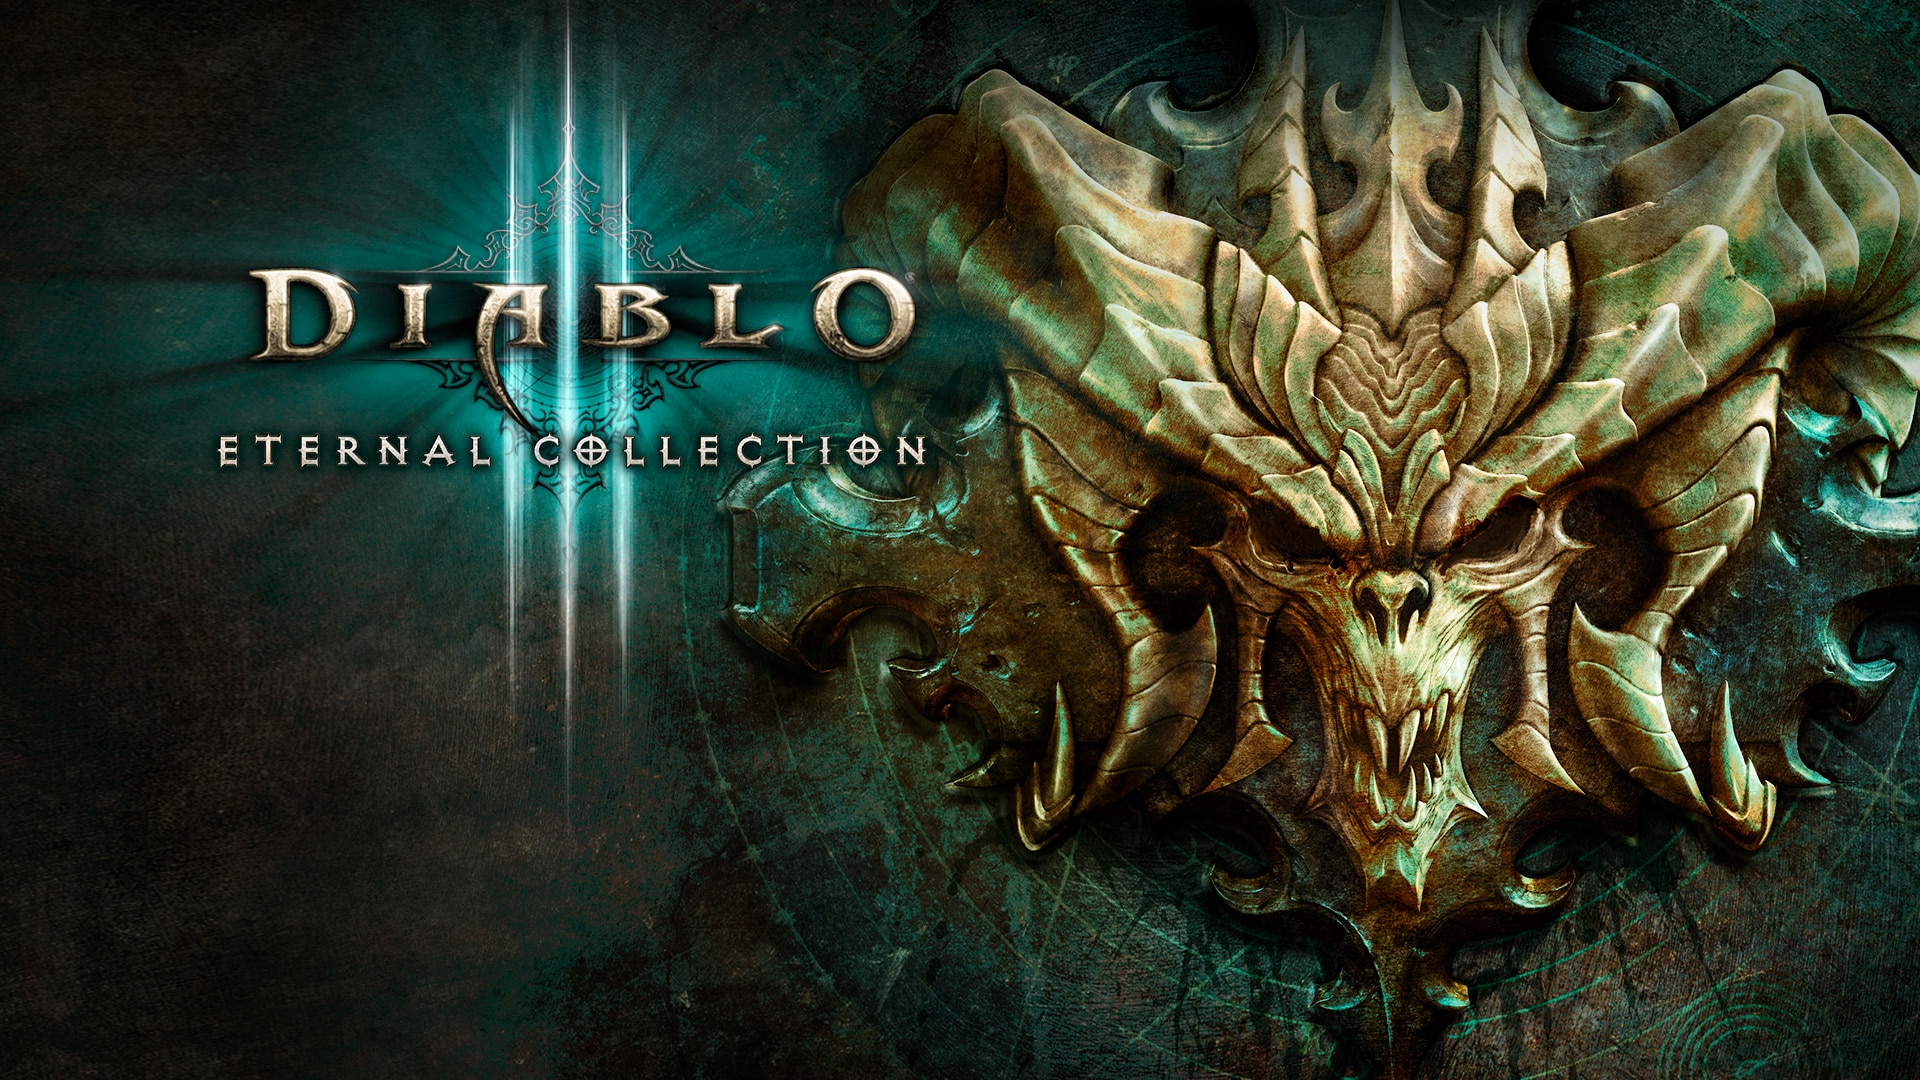 Diablo 3 Legendary Items Description